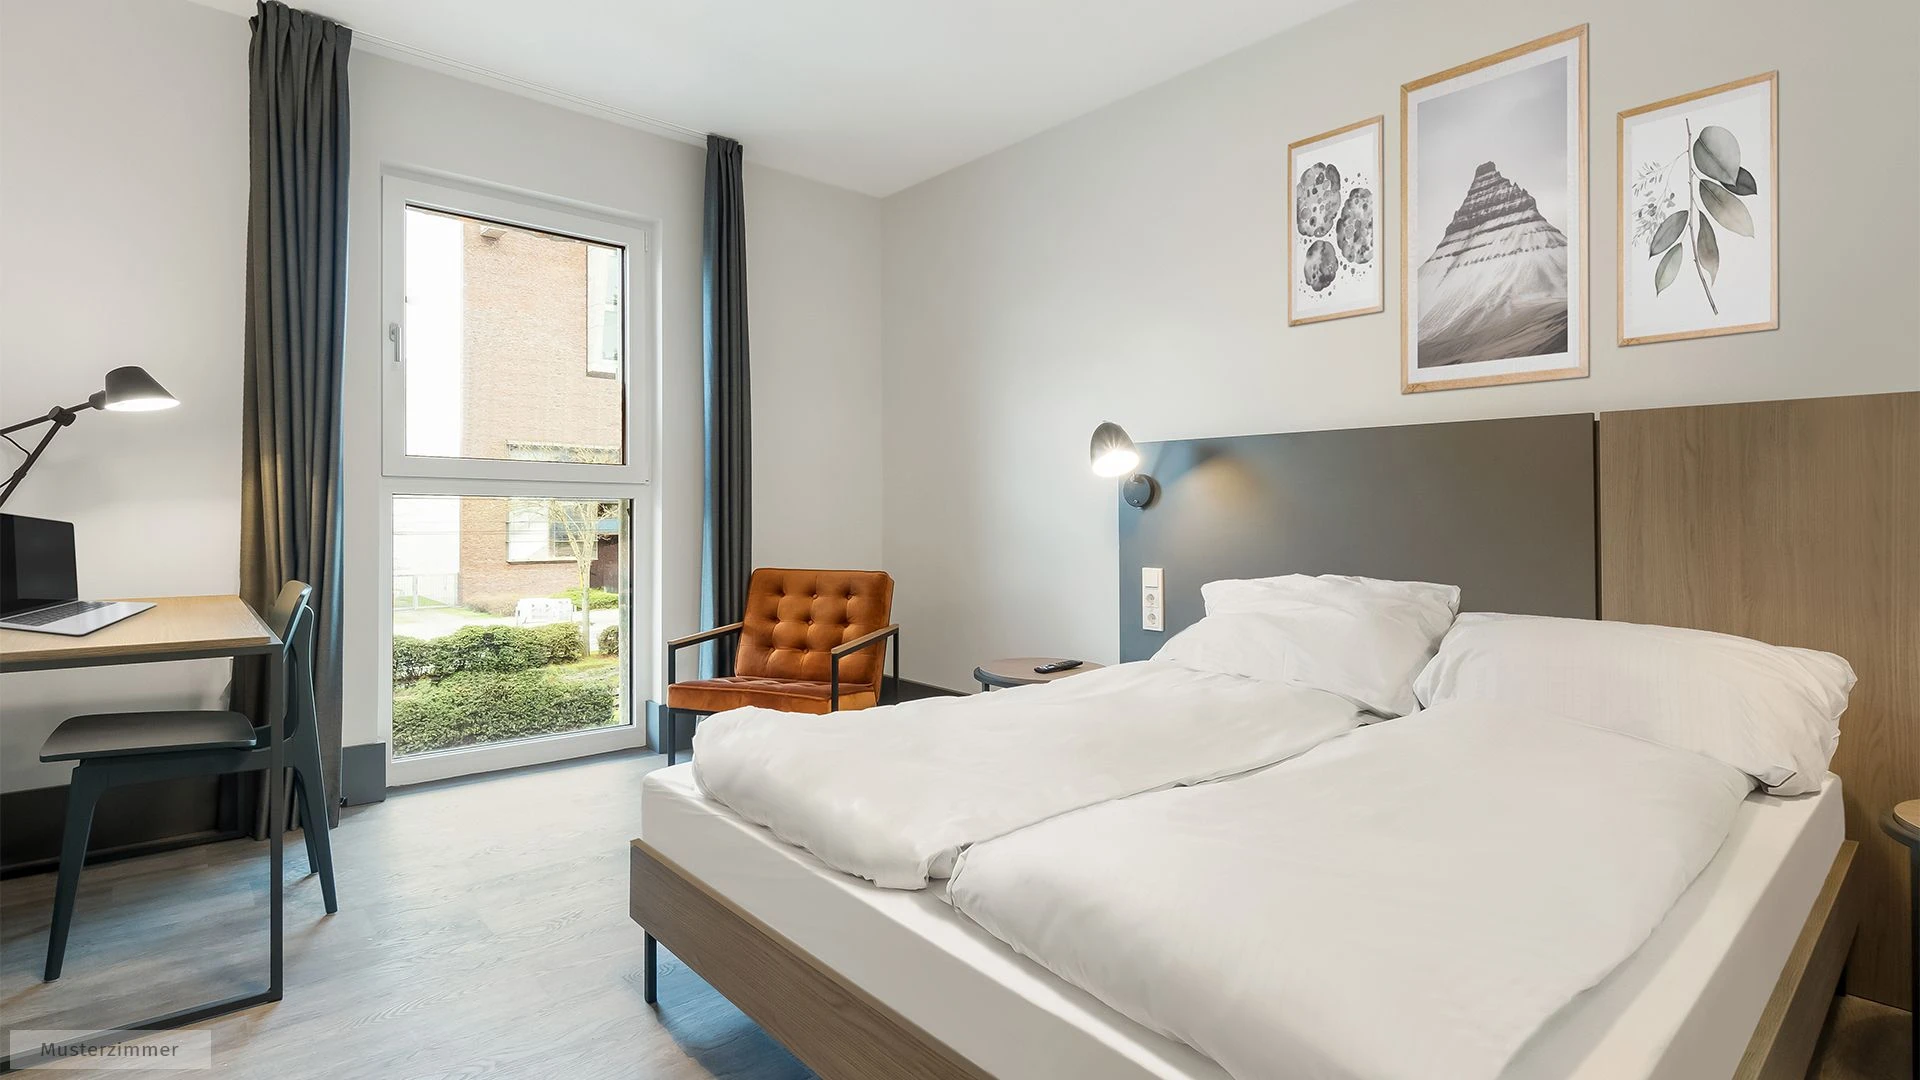 Frankfurt de çift kişilik yataklı kiralık oda